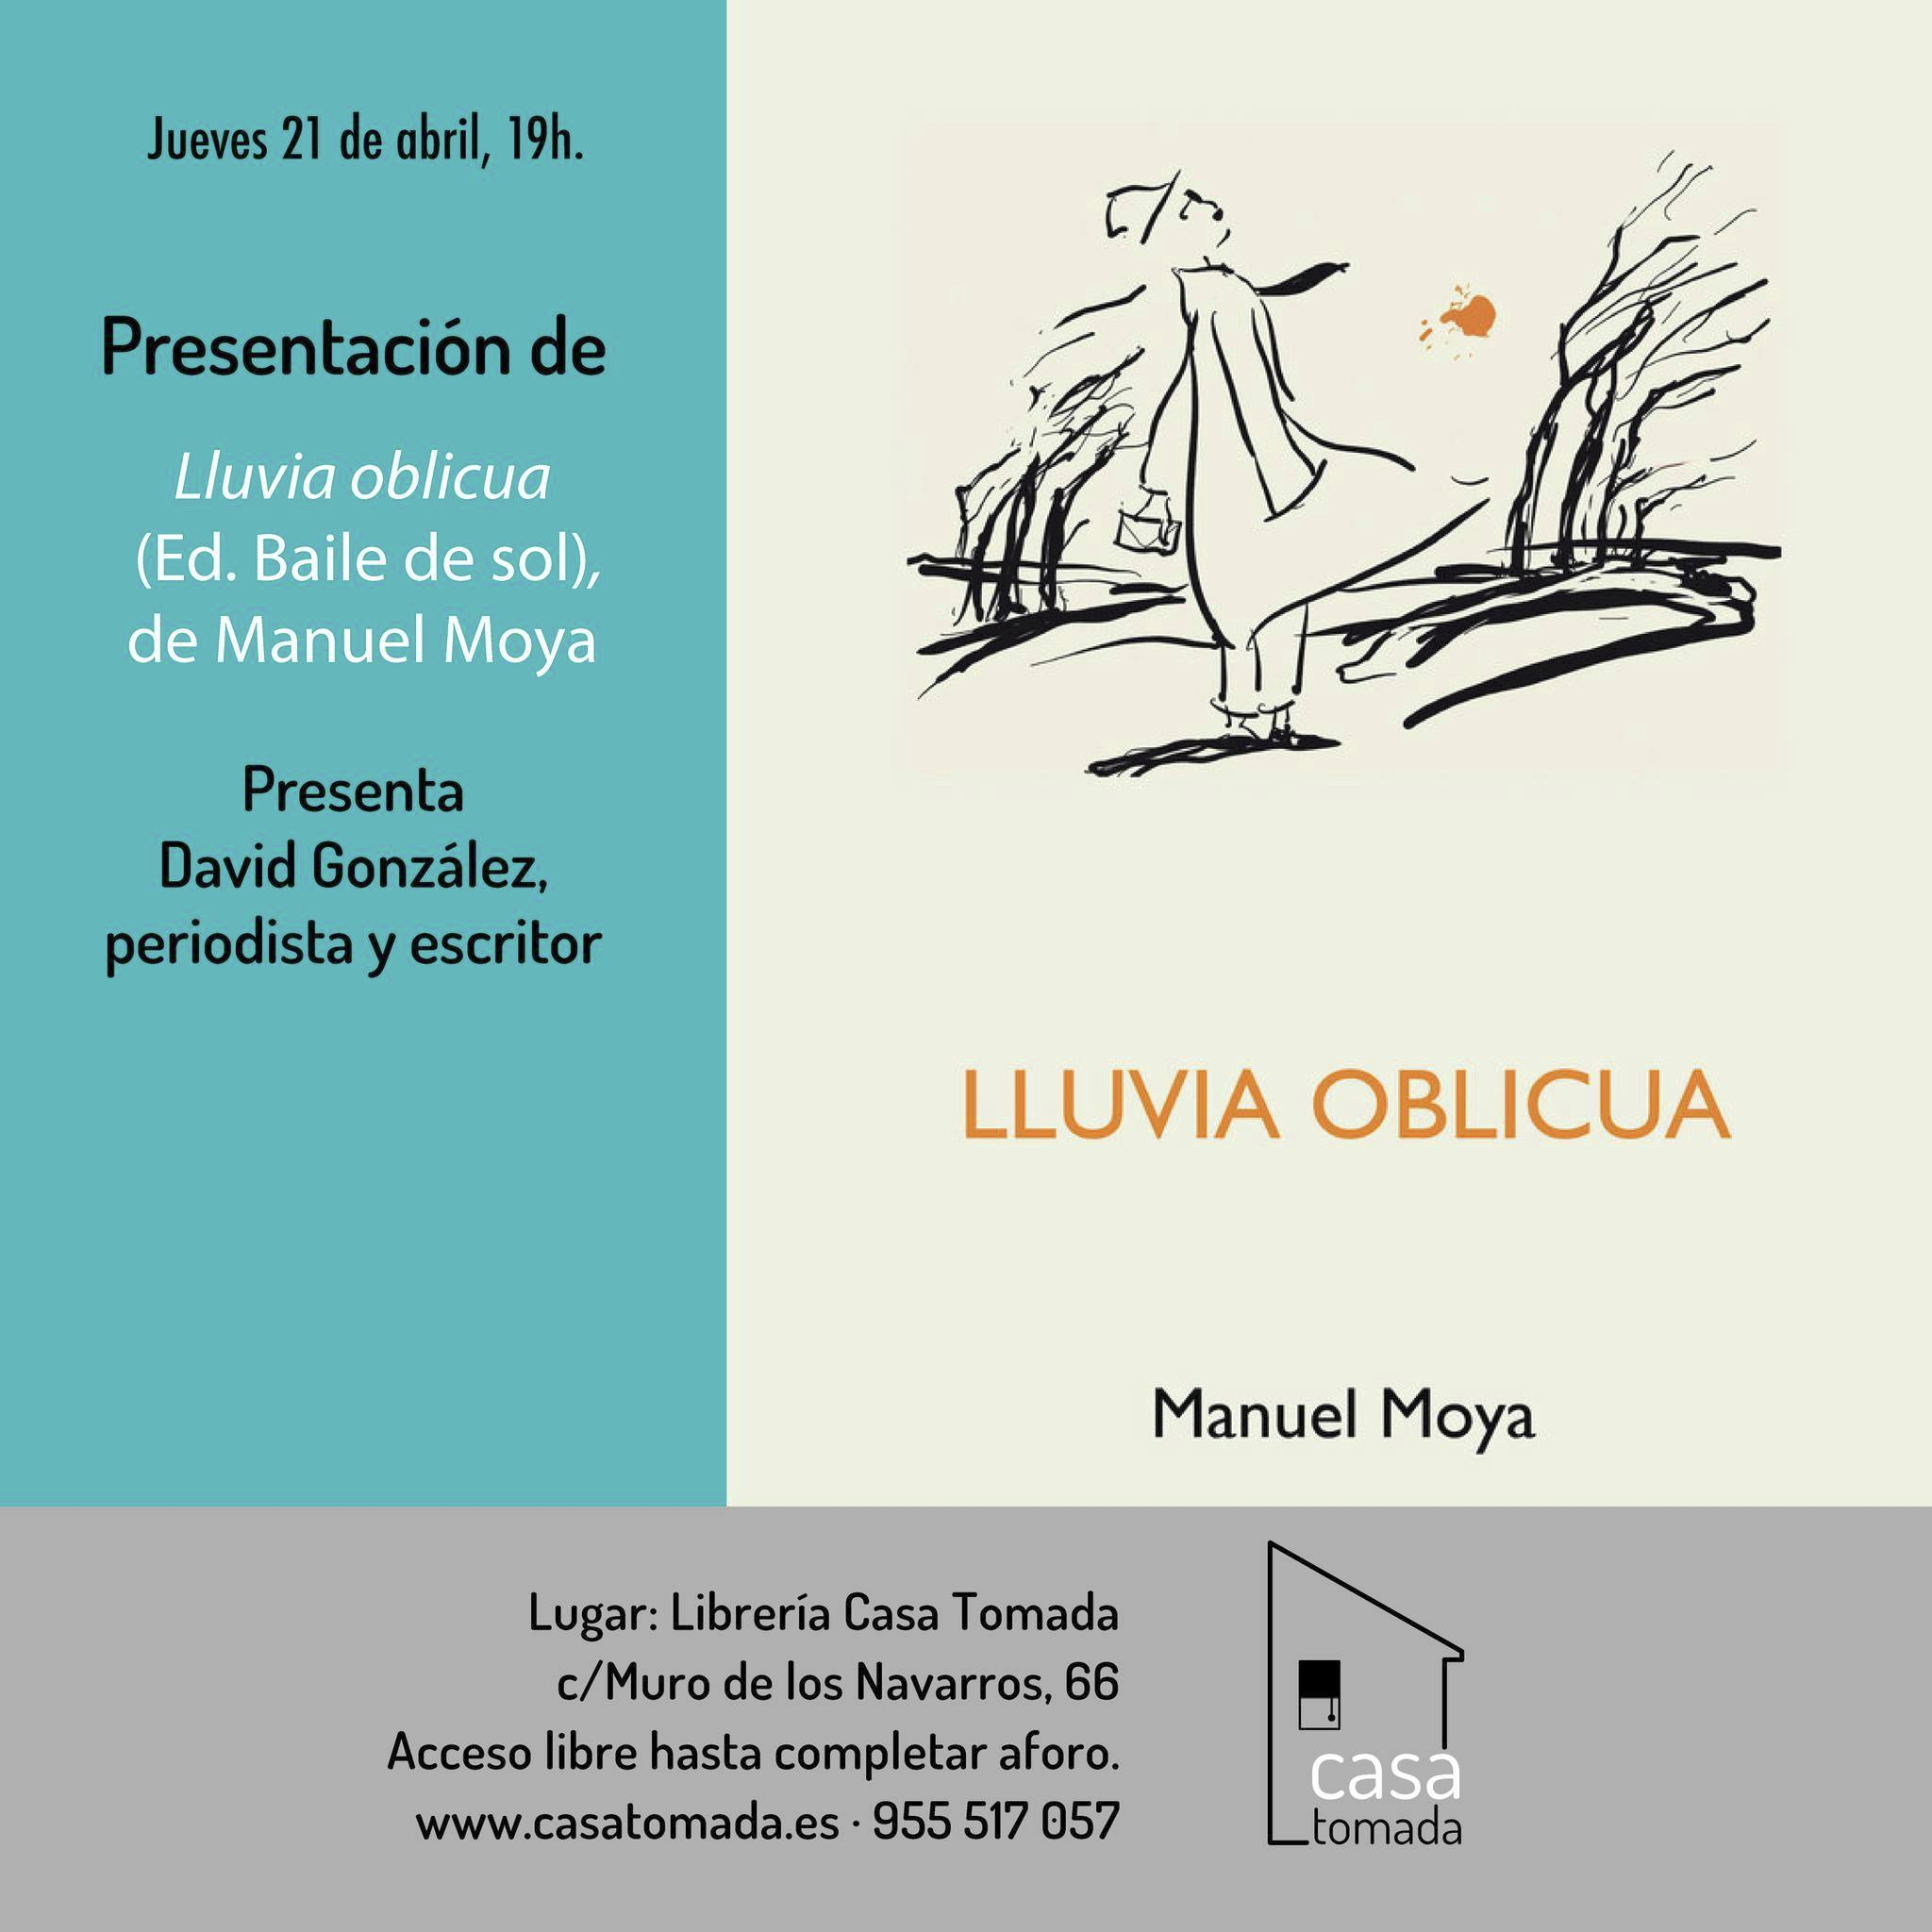 Jueves 21 de abril a las 7 de la tarde presentación de LLUVIA OBLICUA de Manuel Moya en la librería Casa Tomada, Sevilla